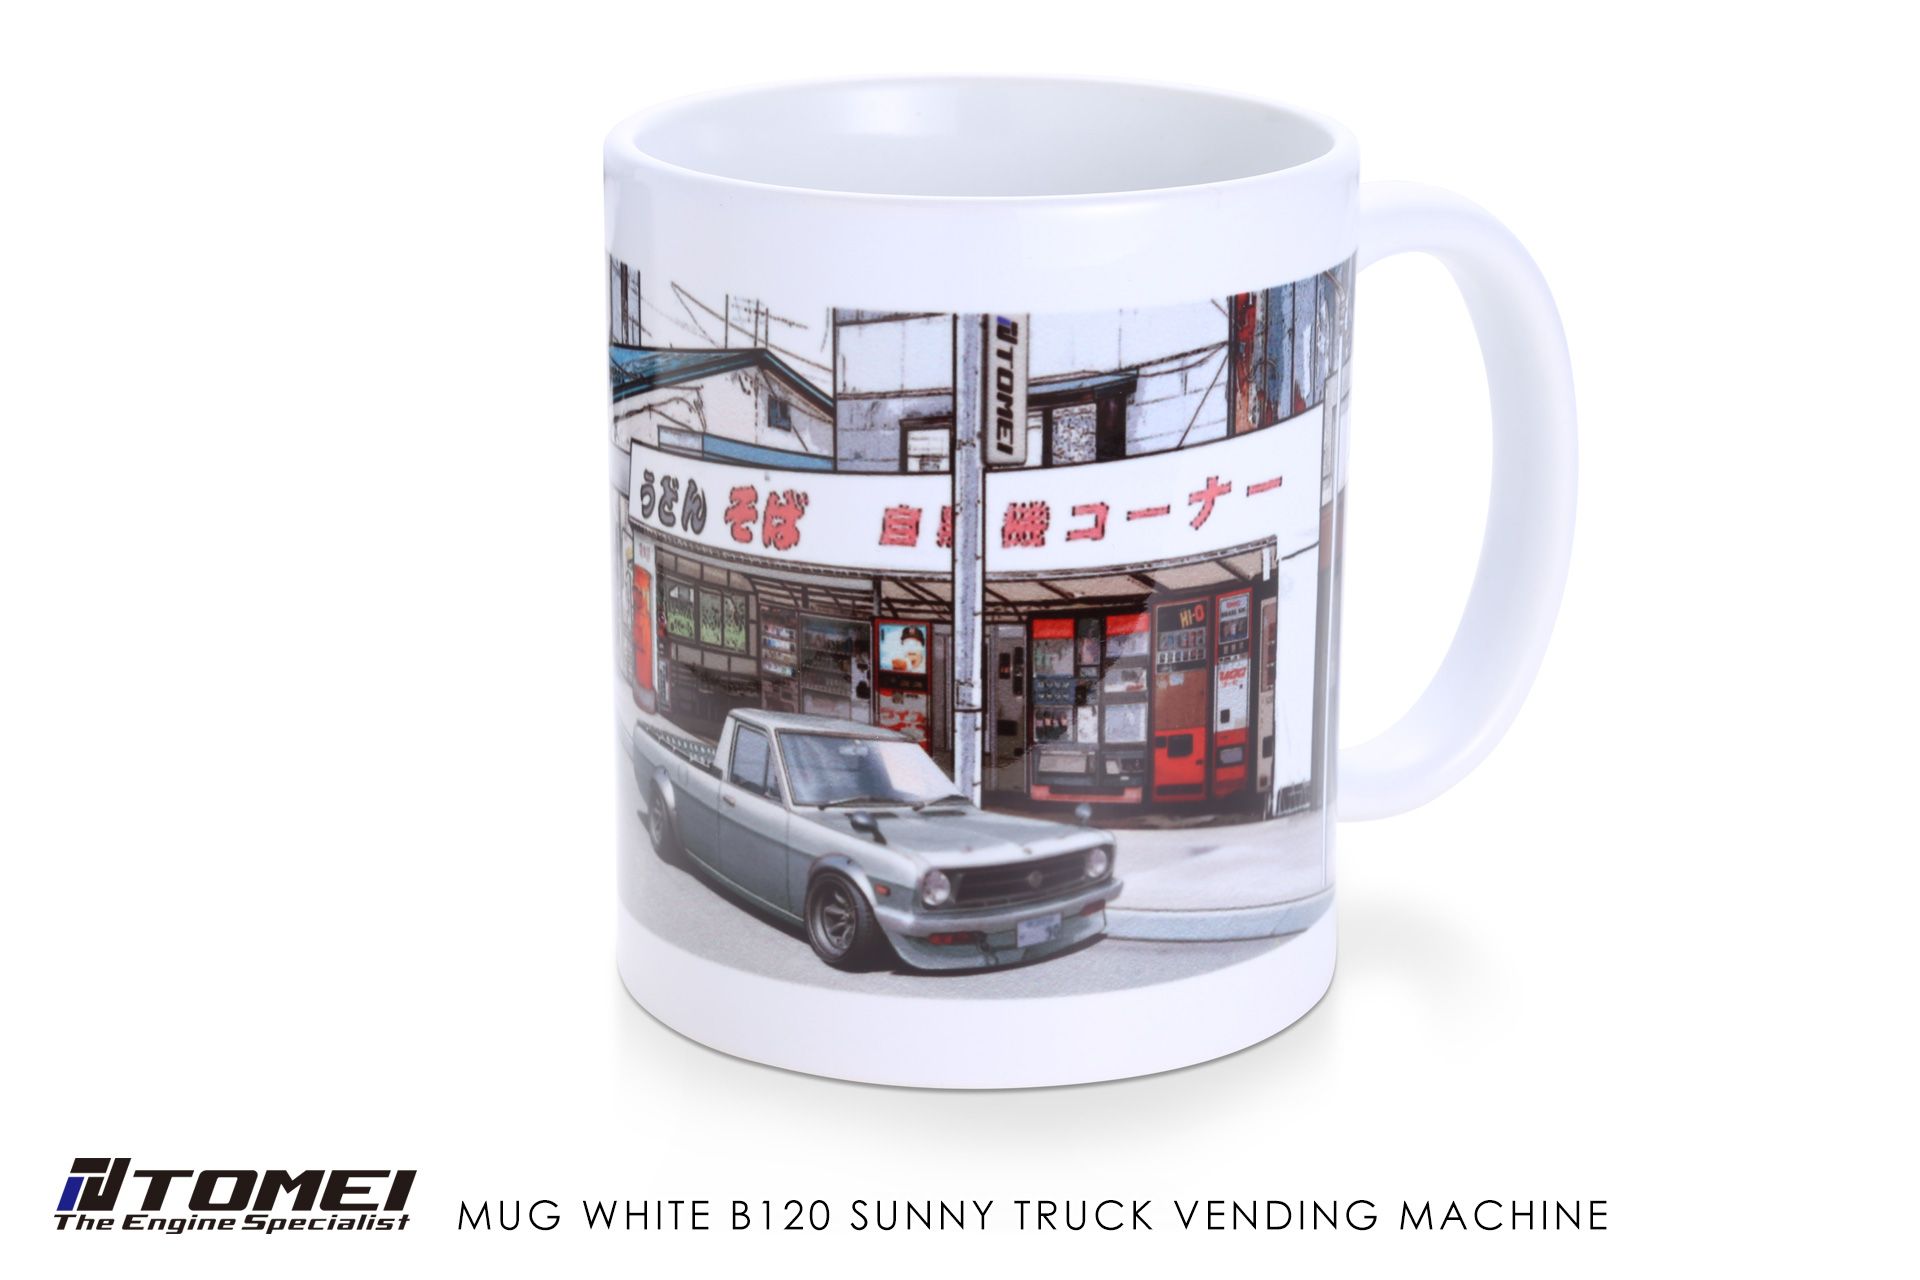 Tomei Mug White B120 Sunny Truck Vending Machine